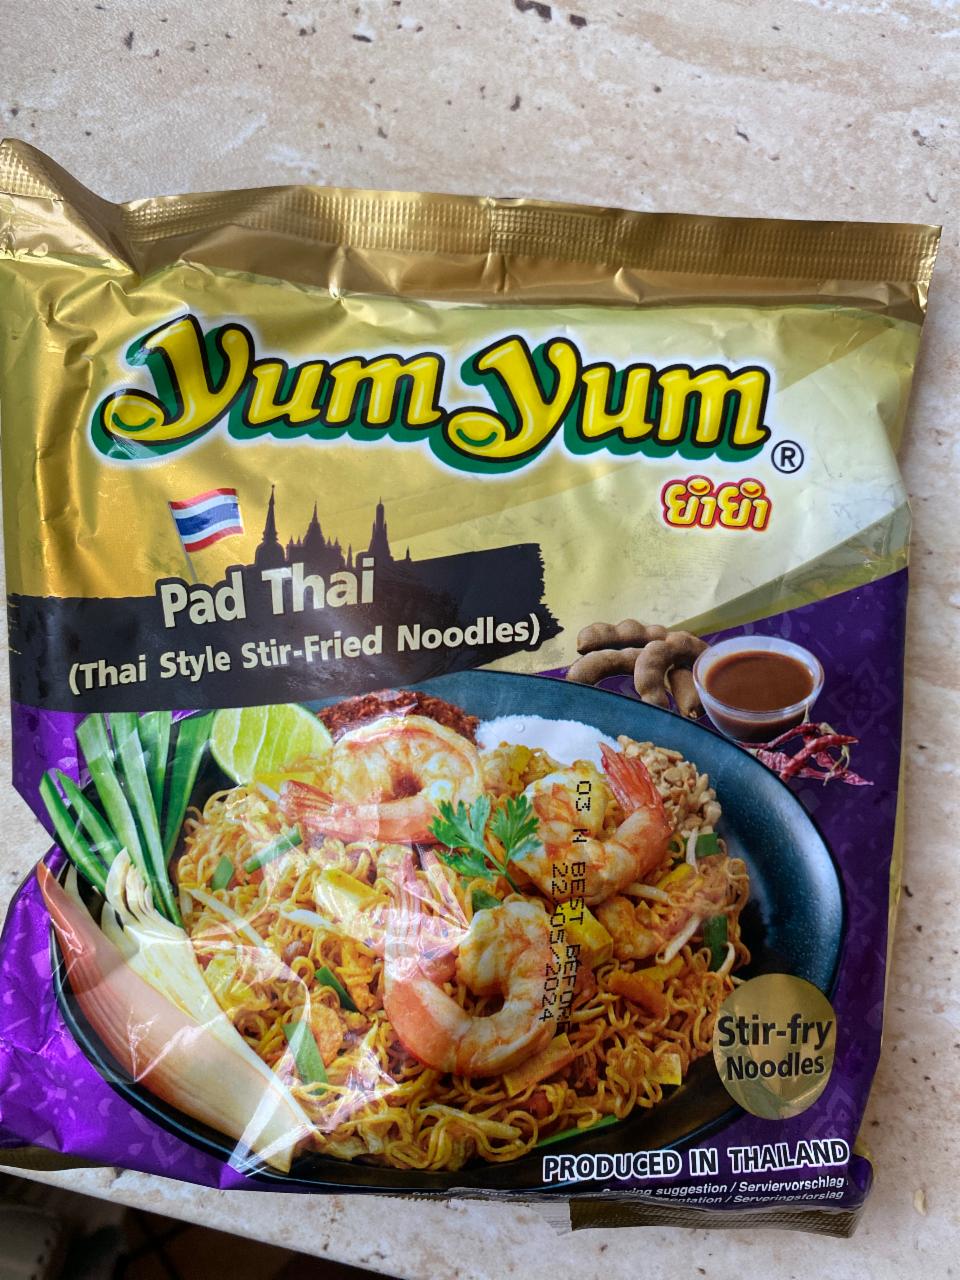 Фото - лапша быстрого приготовления пад тай Pad Thai Yum Yum